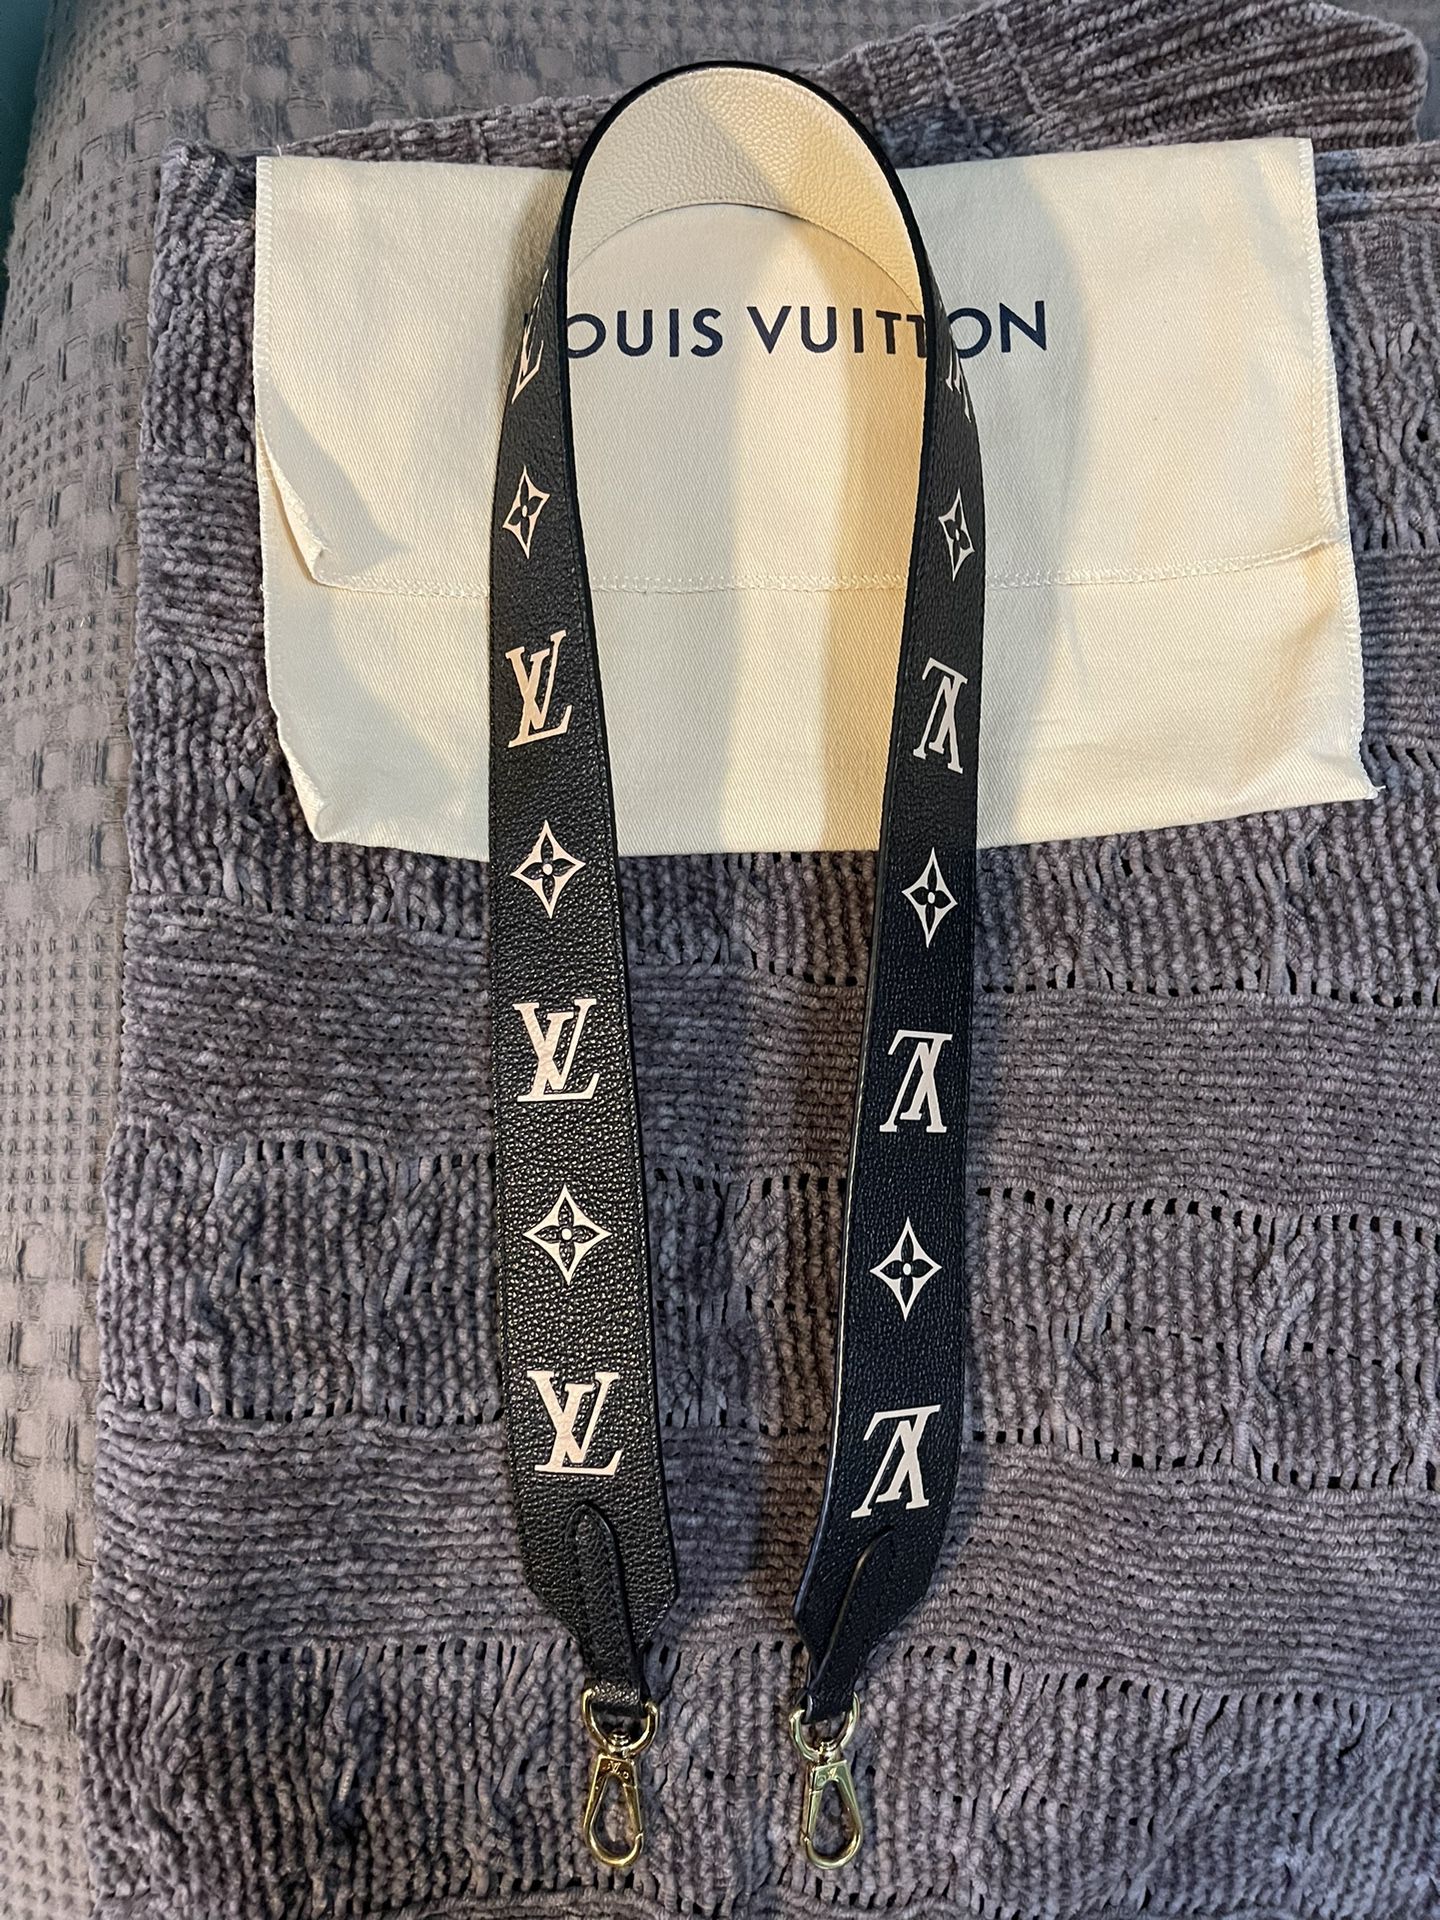 Louis Vuitton Long Wallet for Sale in Honolulu, HI - OfferUp